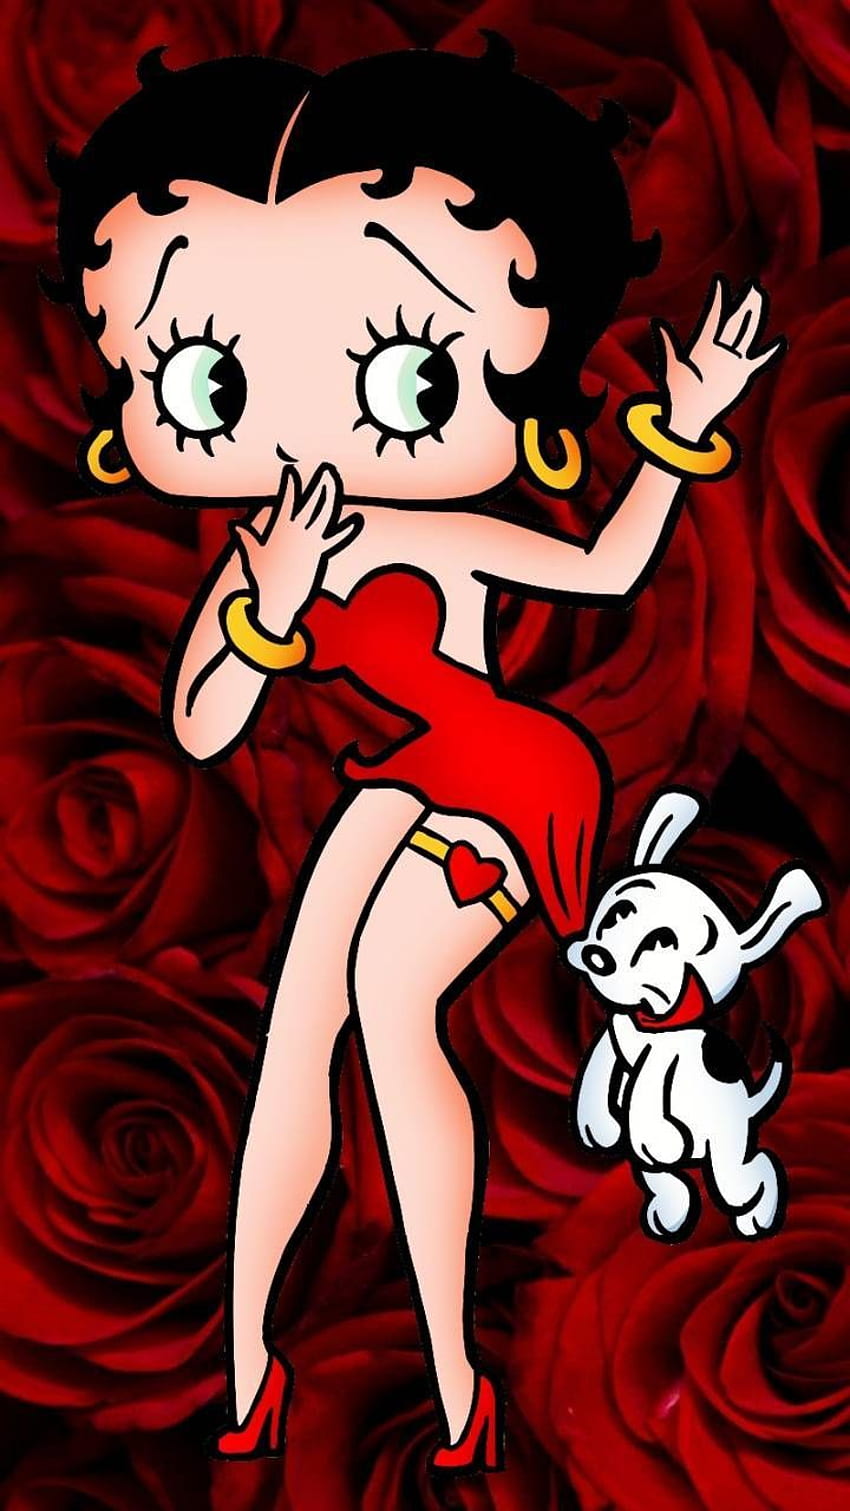 Betty Boop rosa roja de Glendalizz69 - 72 - en ZEDGE™ ahora. Explore millones de popu en 2020. Betty boop art, Betty boop cartoon, Betty boop, Black Betty Boop fondo de pantalla del teléfono